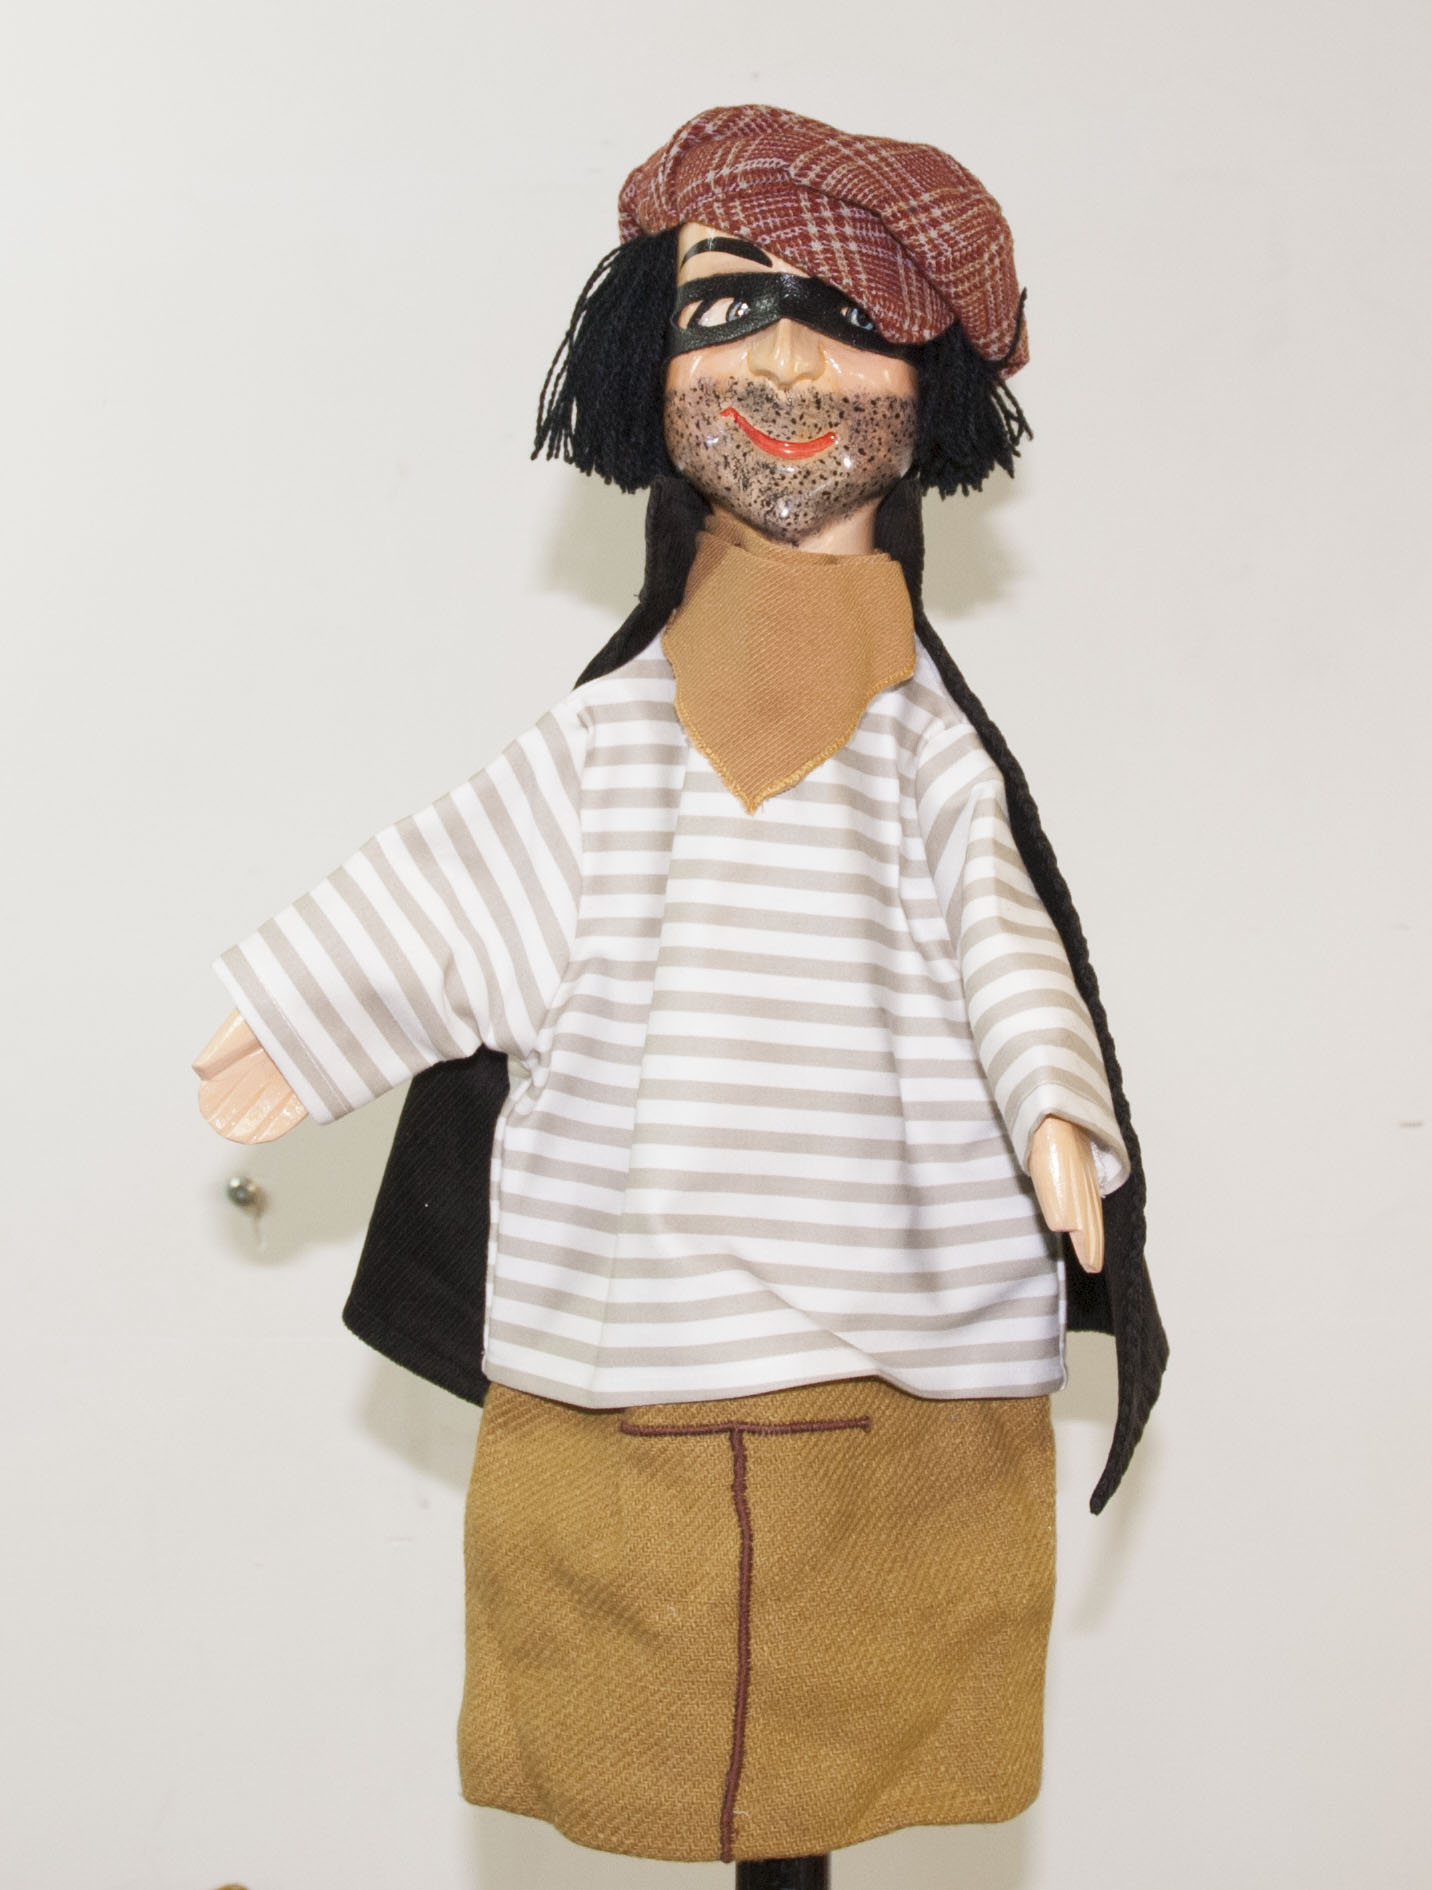 Marionnette Guignol Artisanal en bois – Vieux Lyon Souvenirs